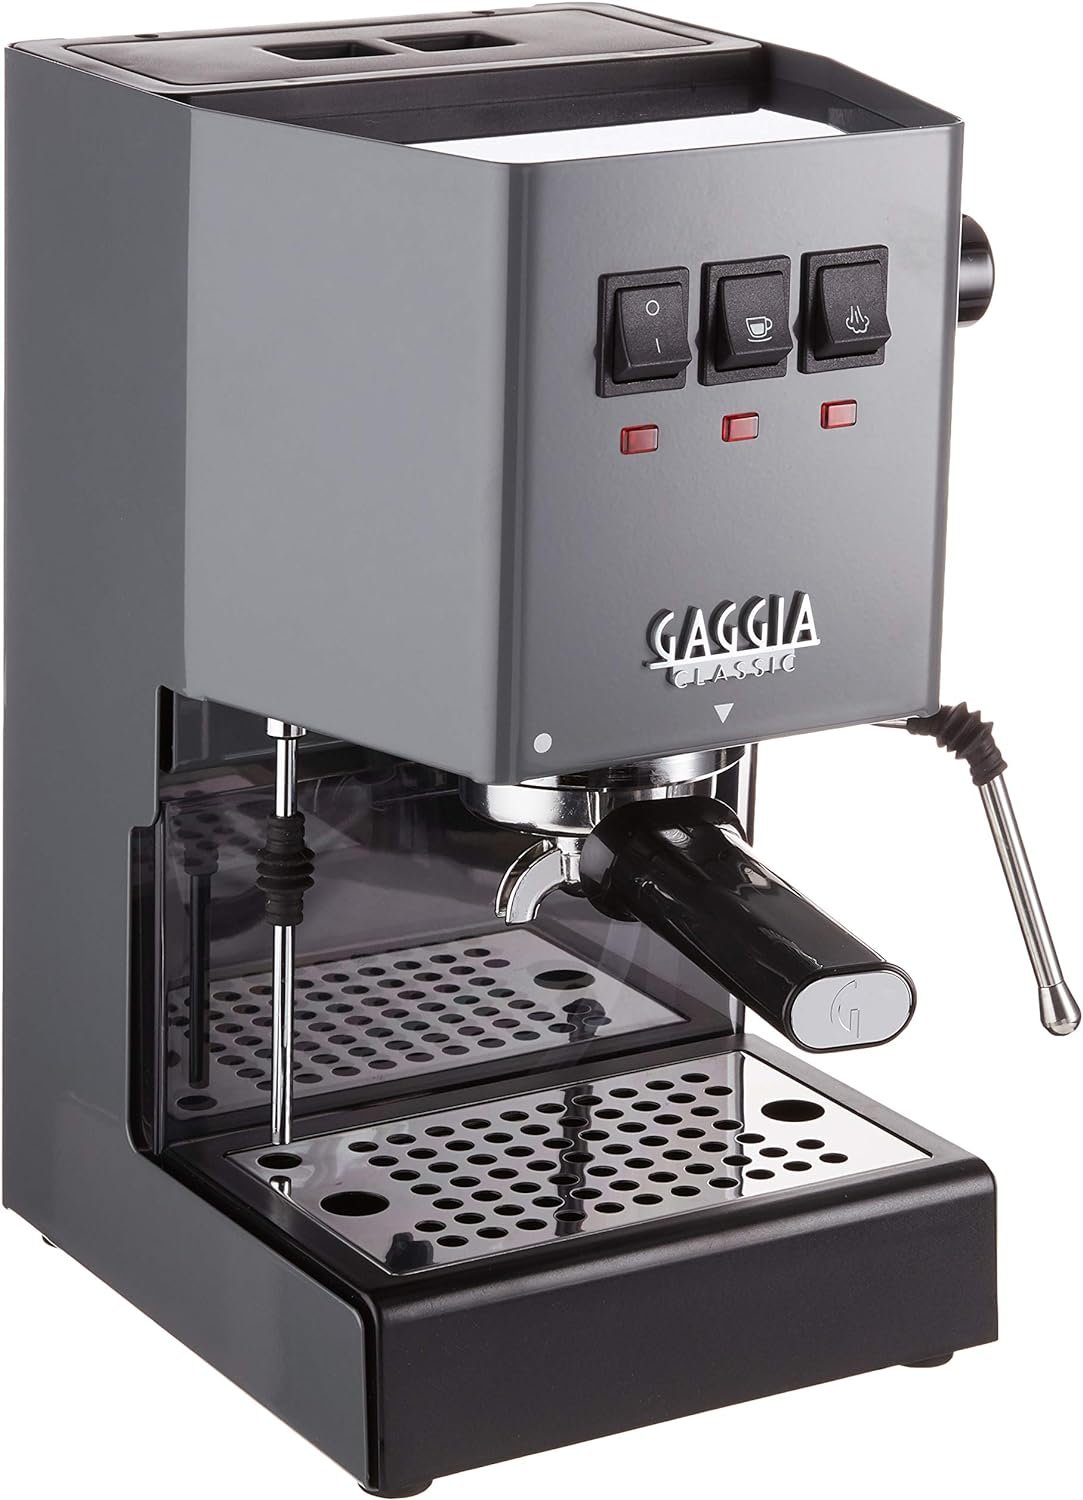 Gaggia RI9380/51 Classic Evo Pro Espresso Machine, Industrial Grey, Small